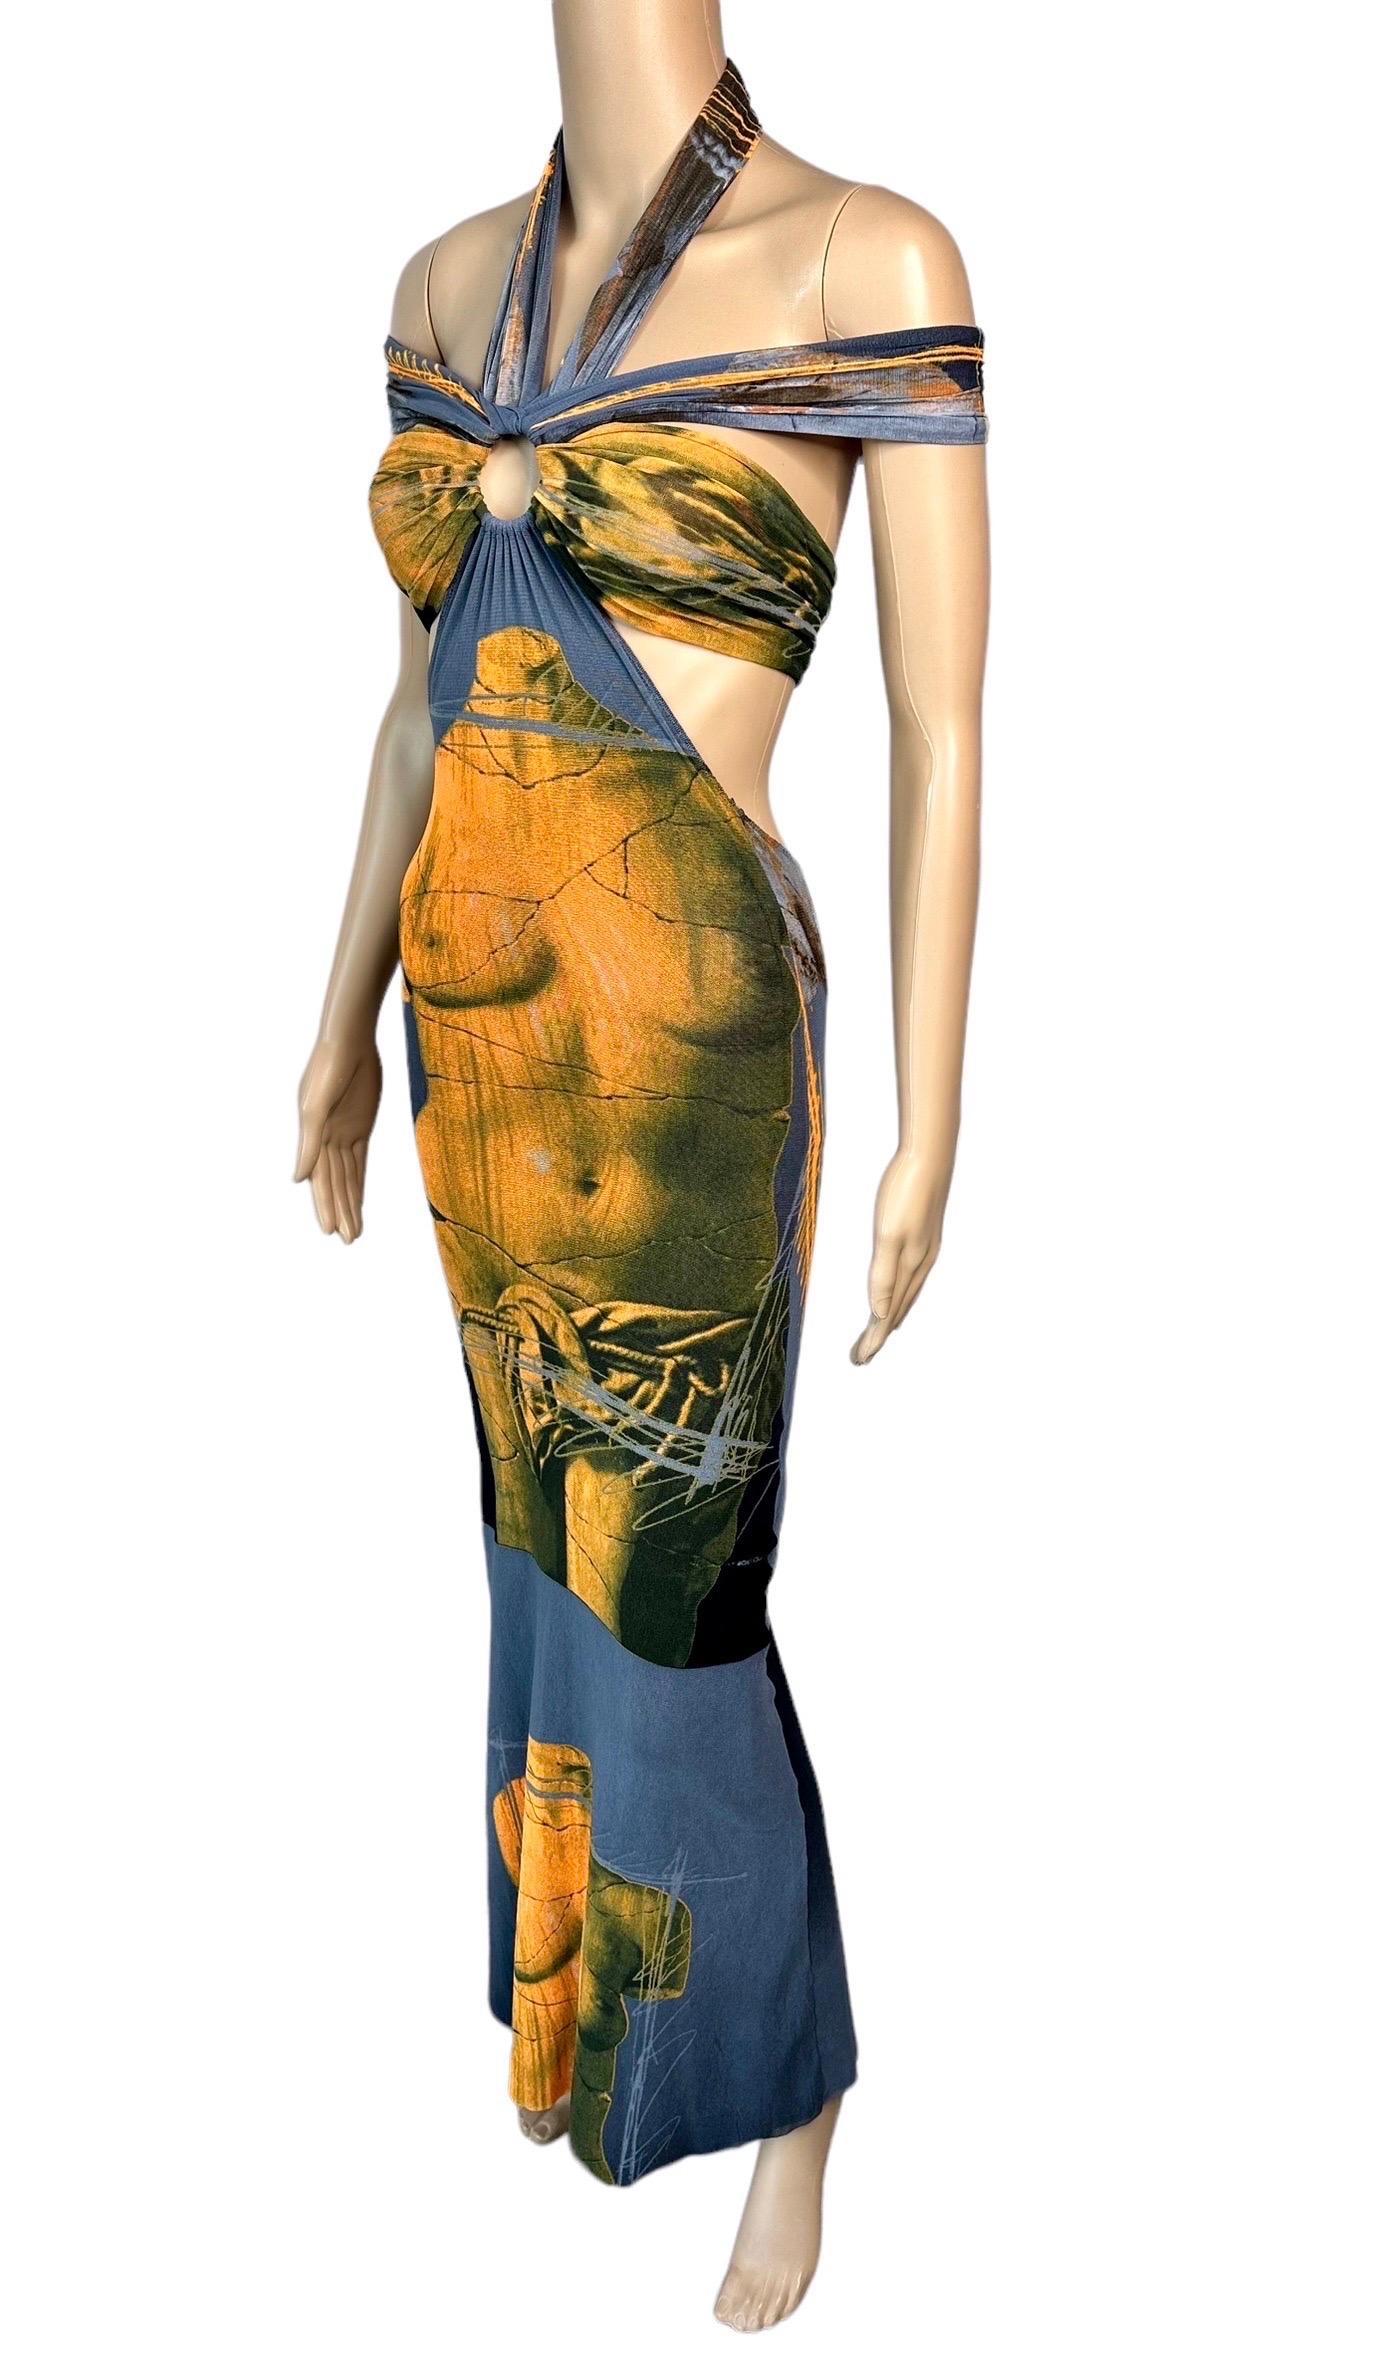 Jean Paul Gaultier Soleil S/S 1999 Vintage Venus De Milo Cutout Mesh Sheer Dress 1